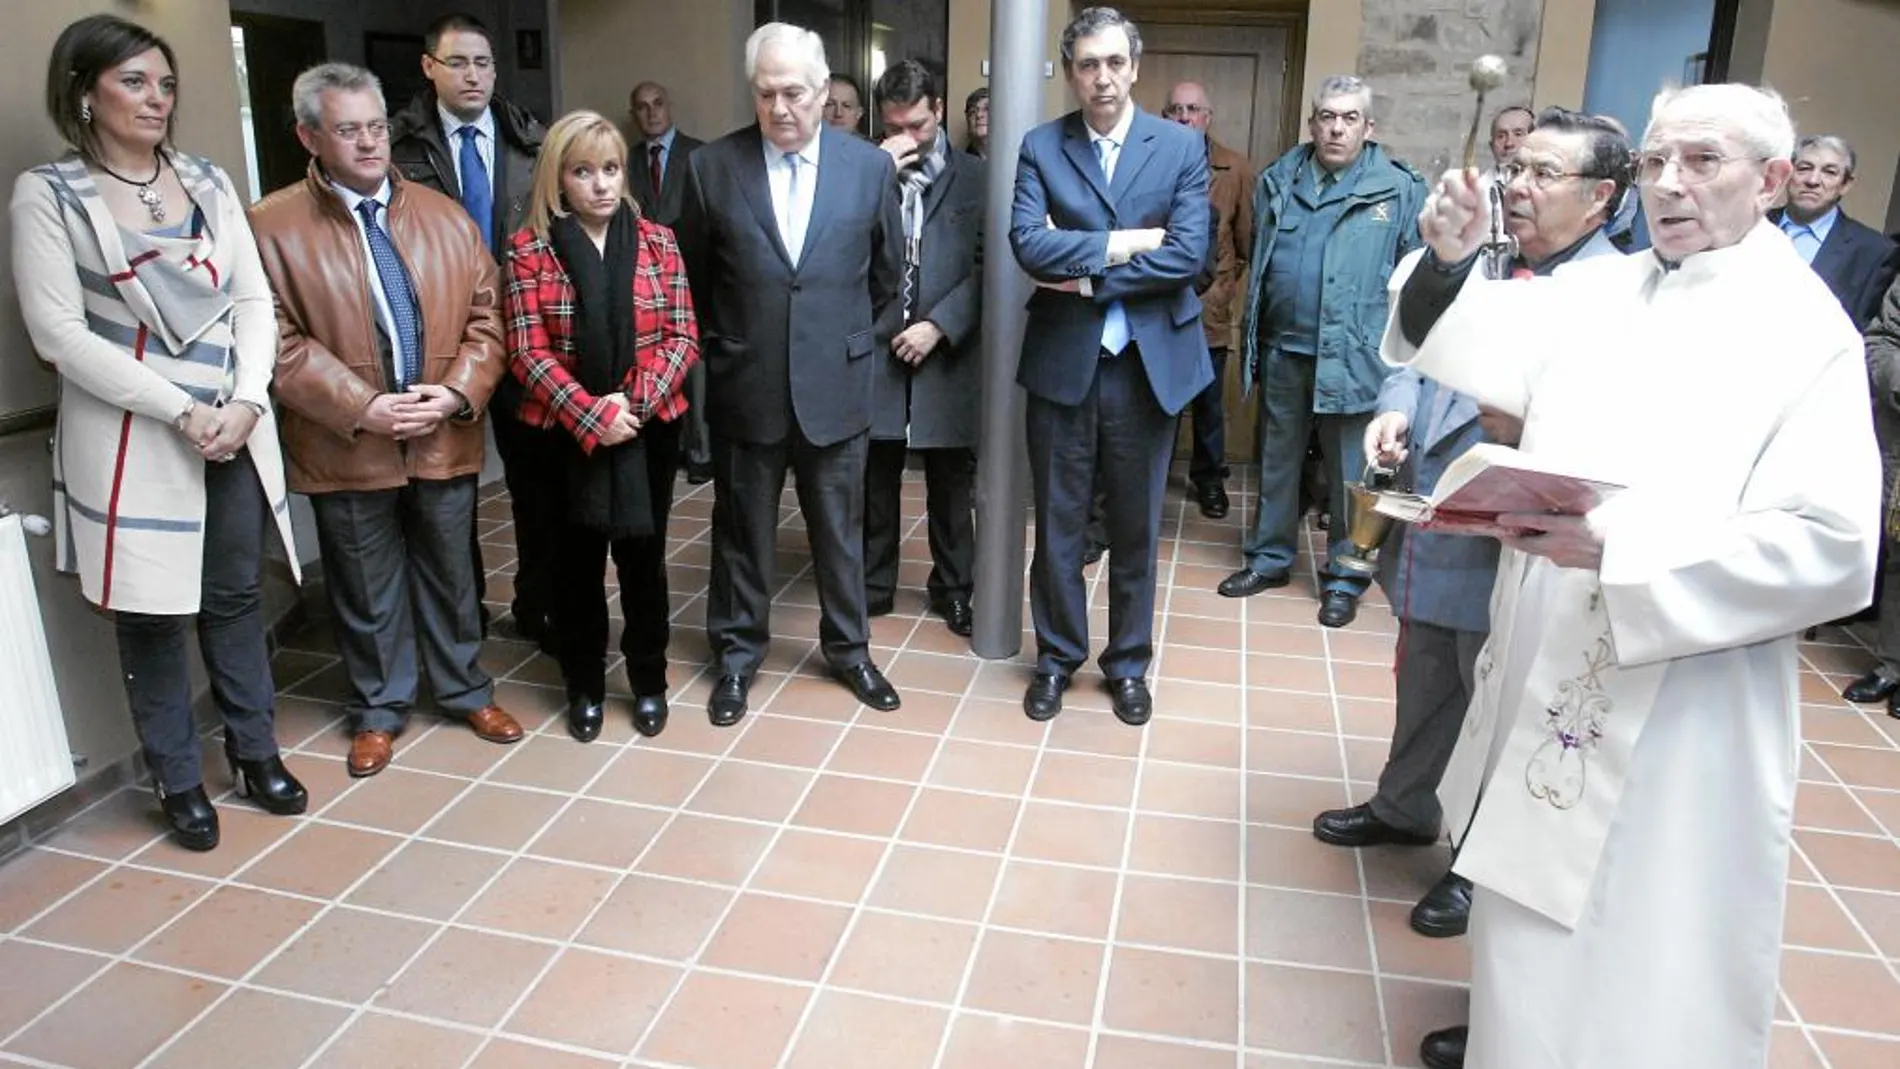 Echa a andar en León el nuevo centro multiservicios para personas mayores